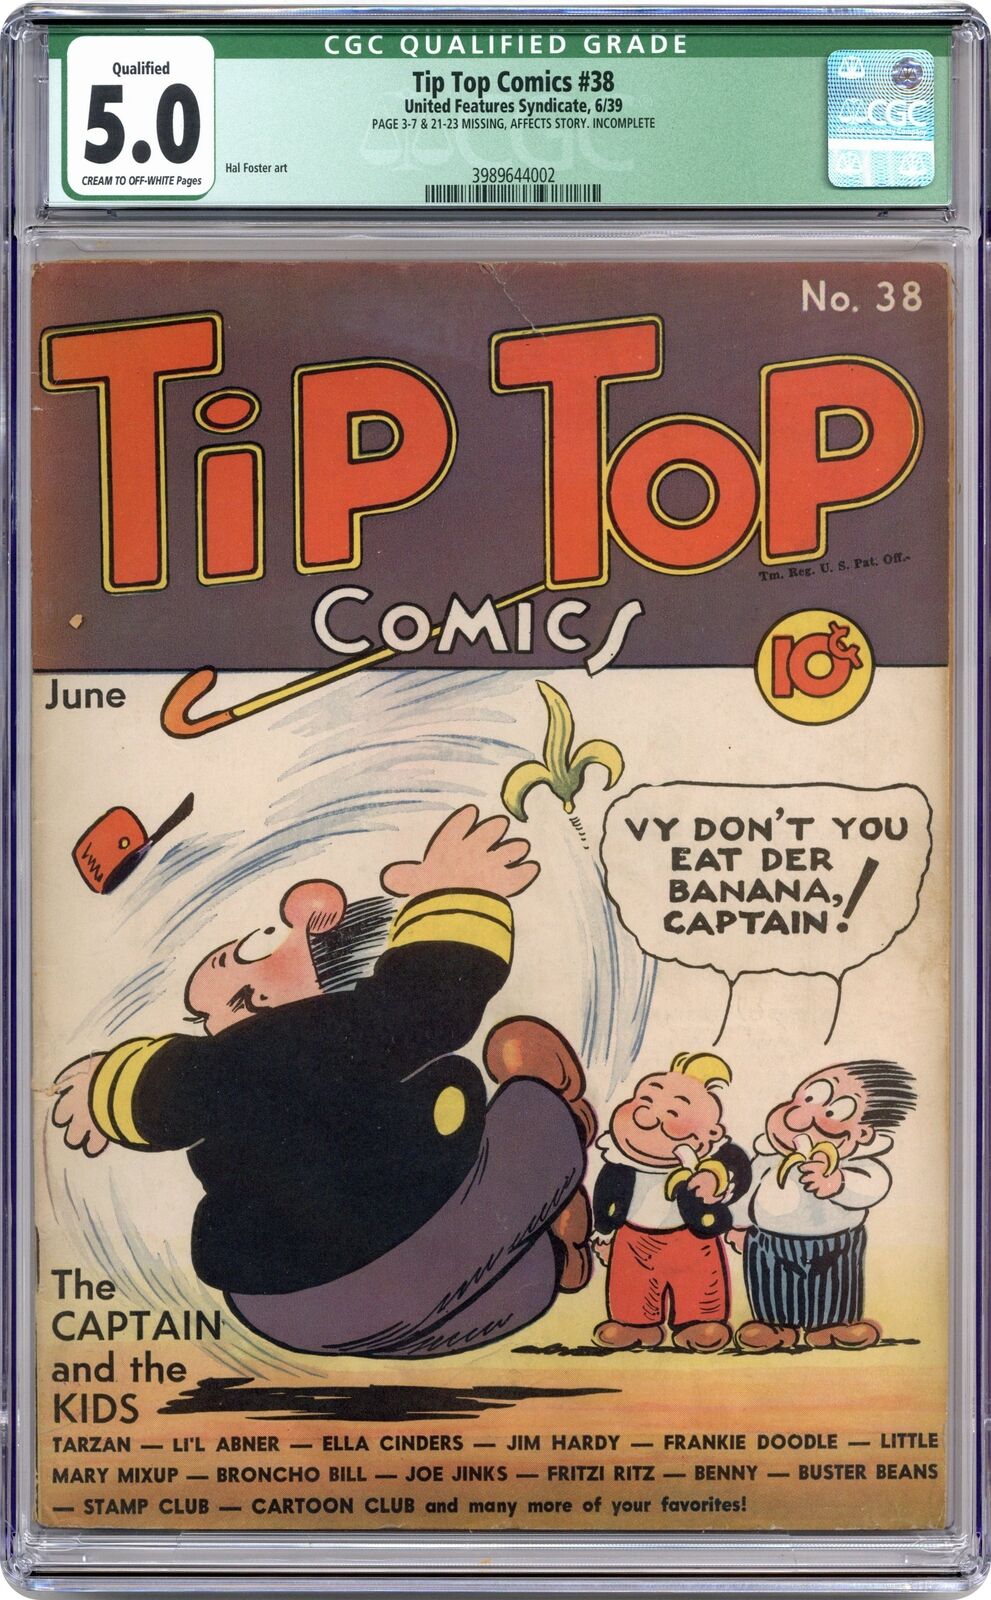 Tip Top Comics #38 CGC 5.0 QUALIFIED 1939 3989644002